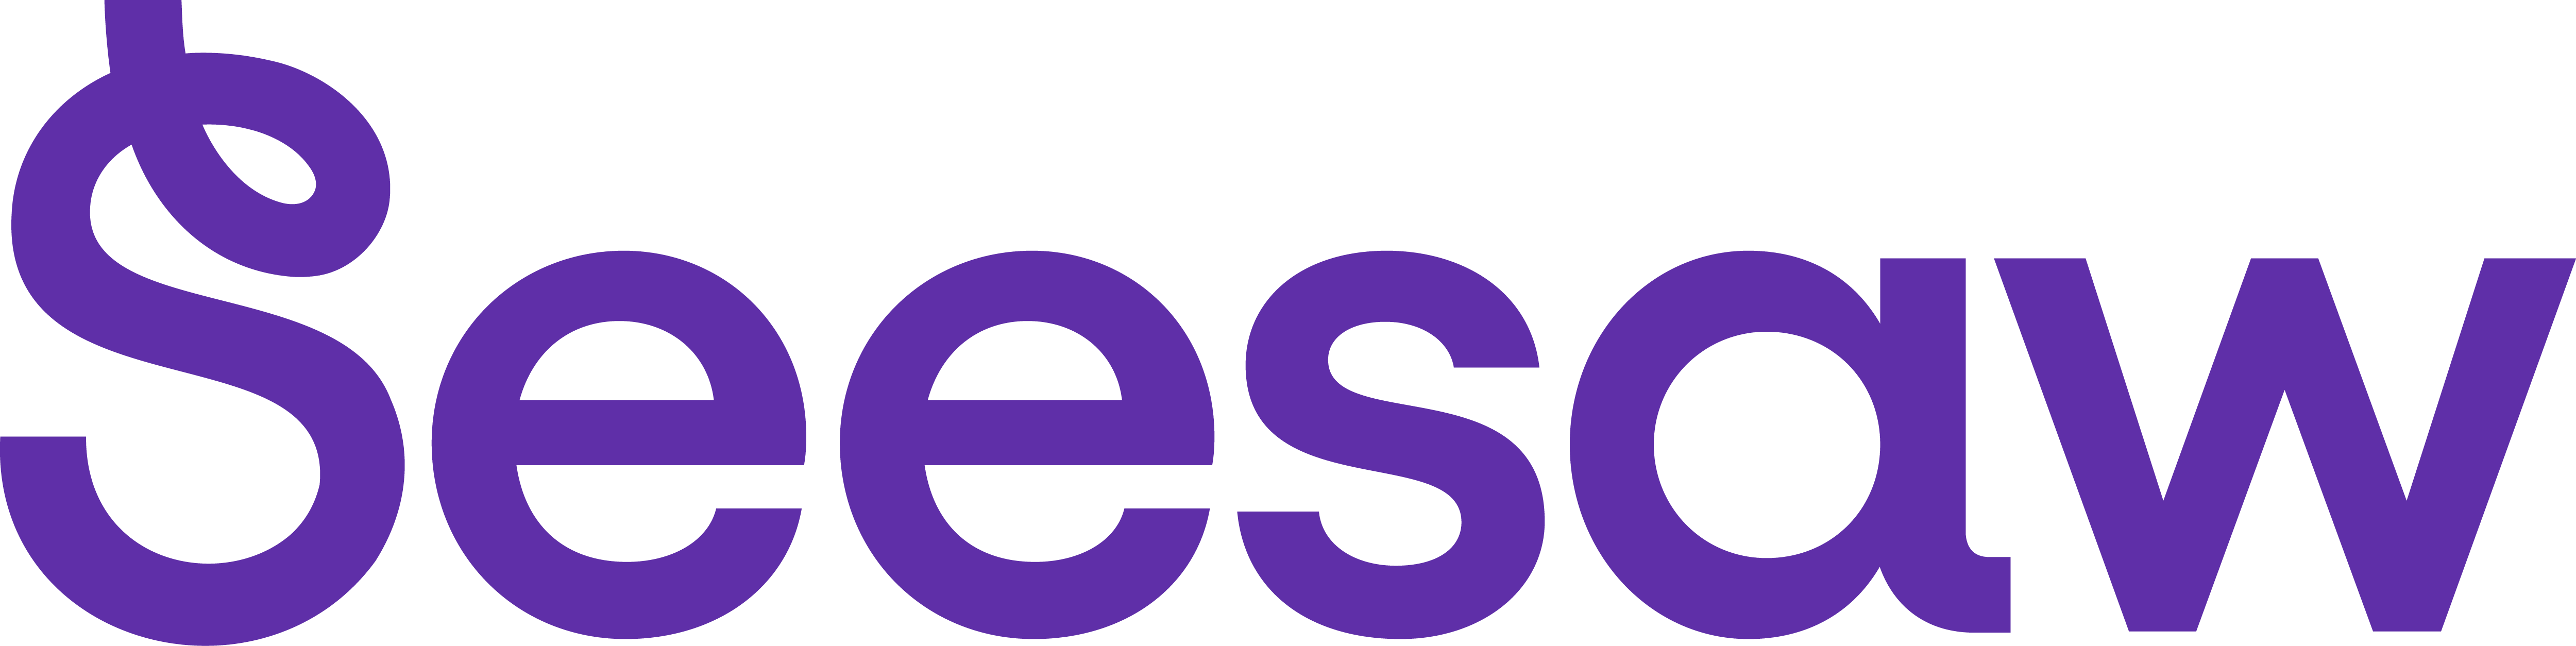 Seesaw-logo